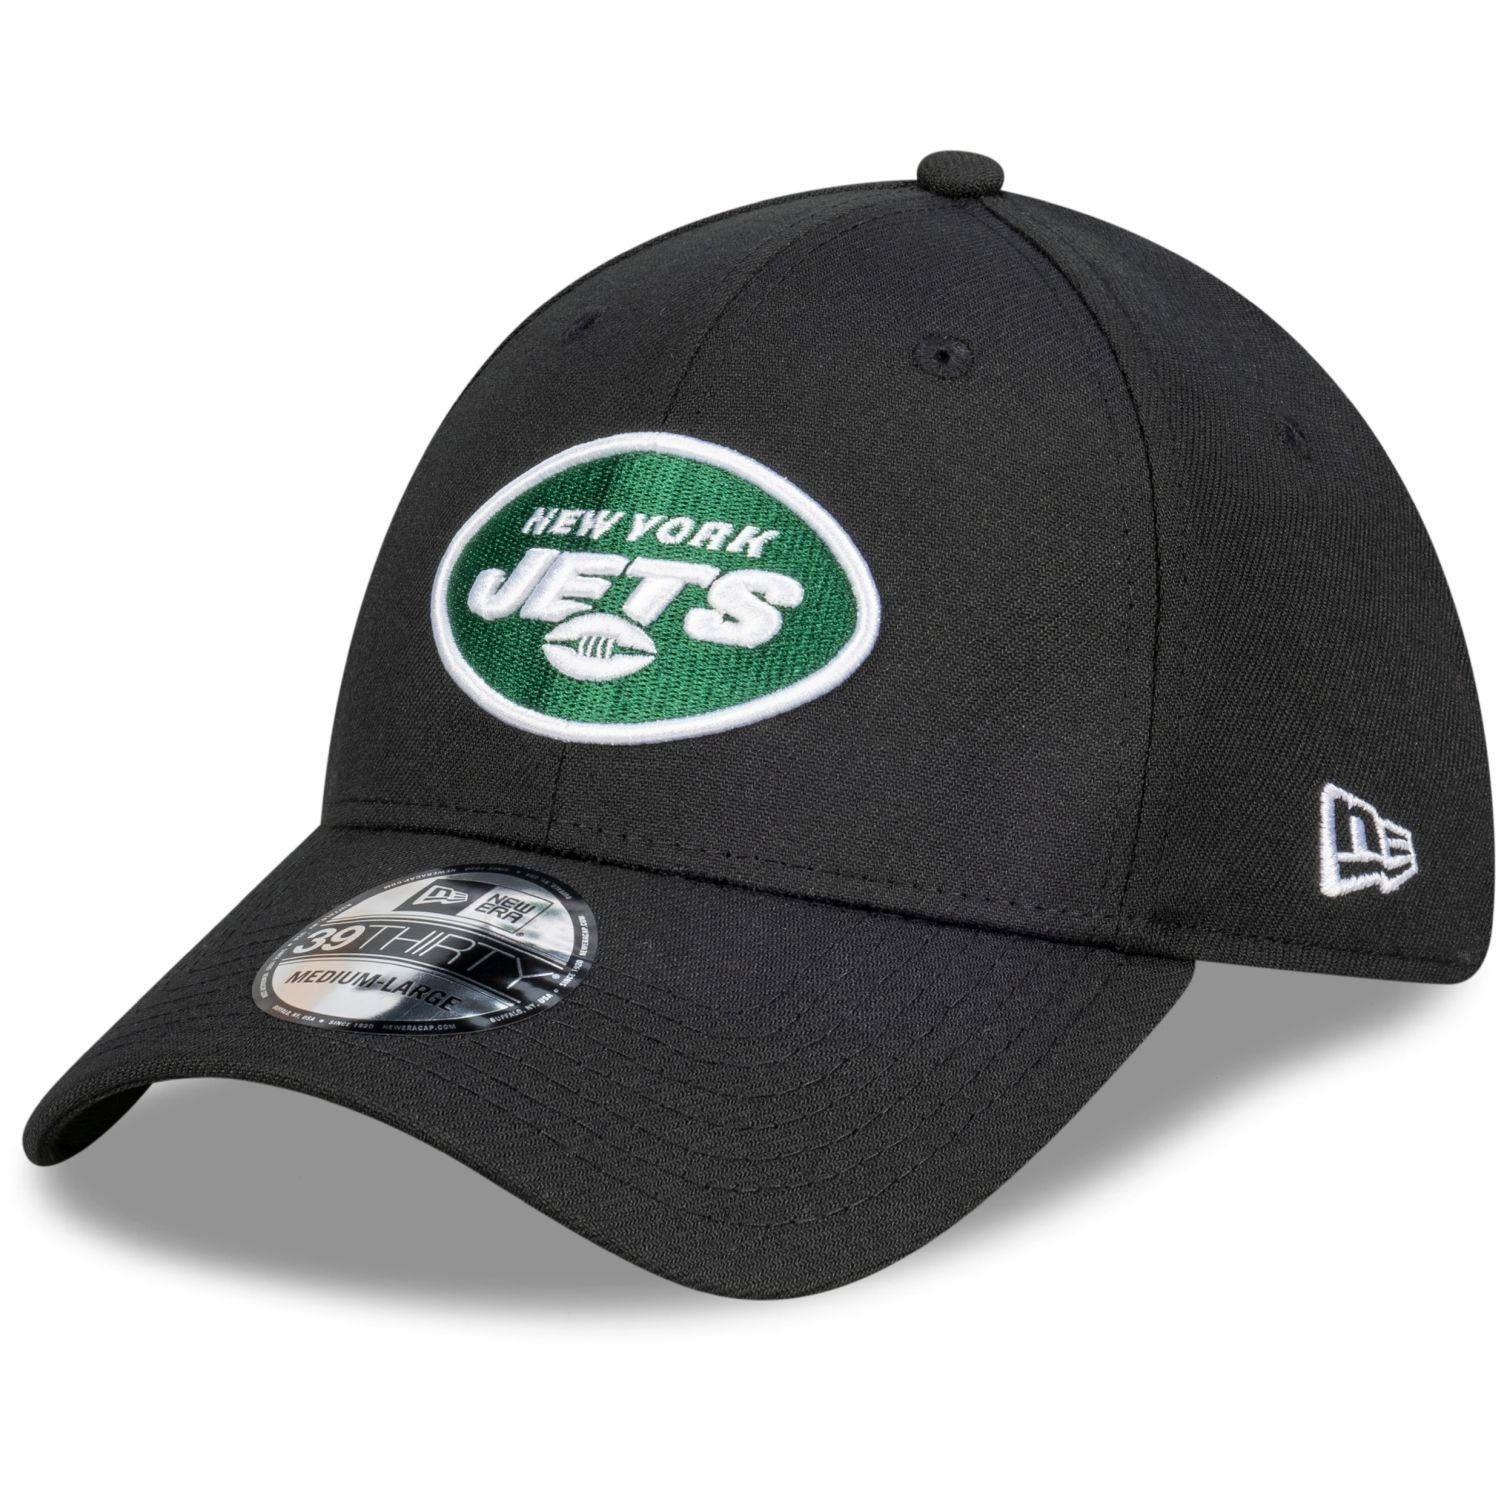 New Era Flex Cap 39Thirty StretchFit NFL Teams New York Jets